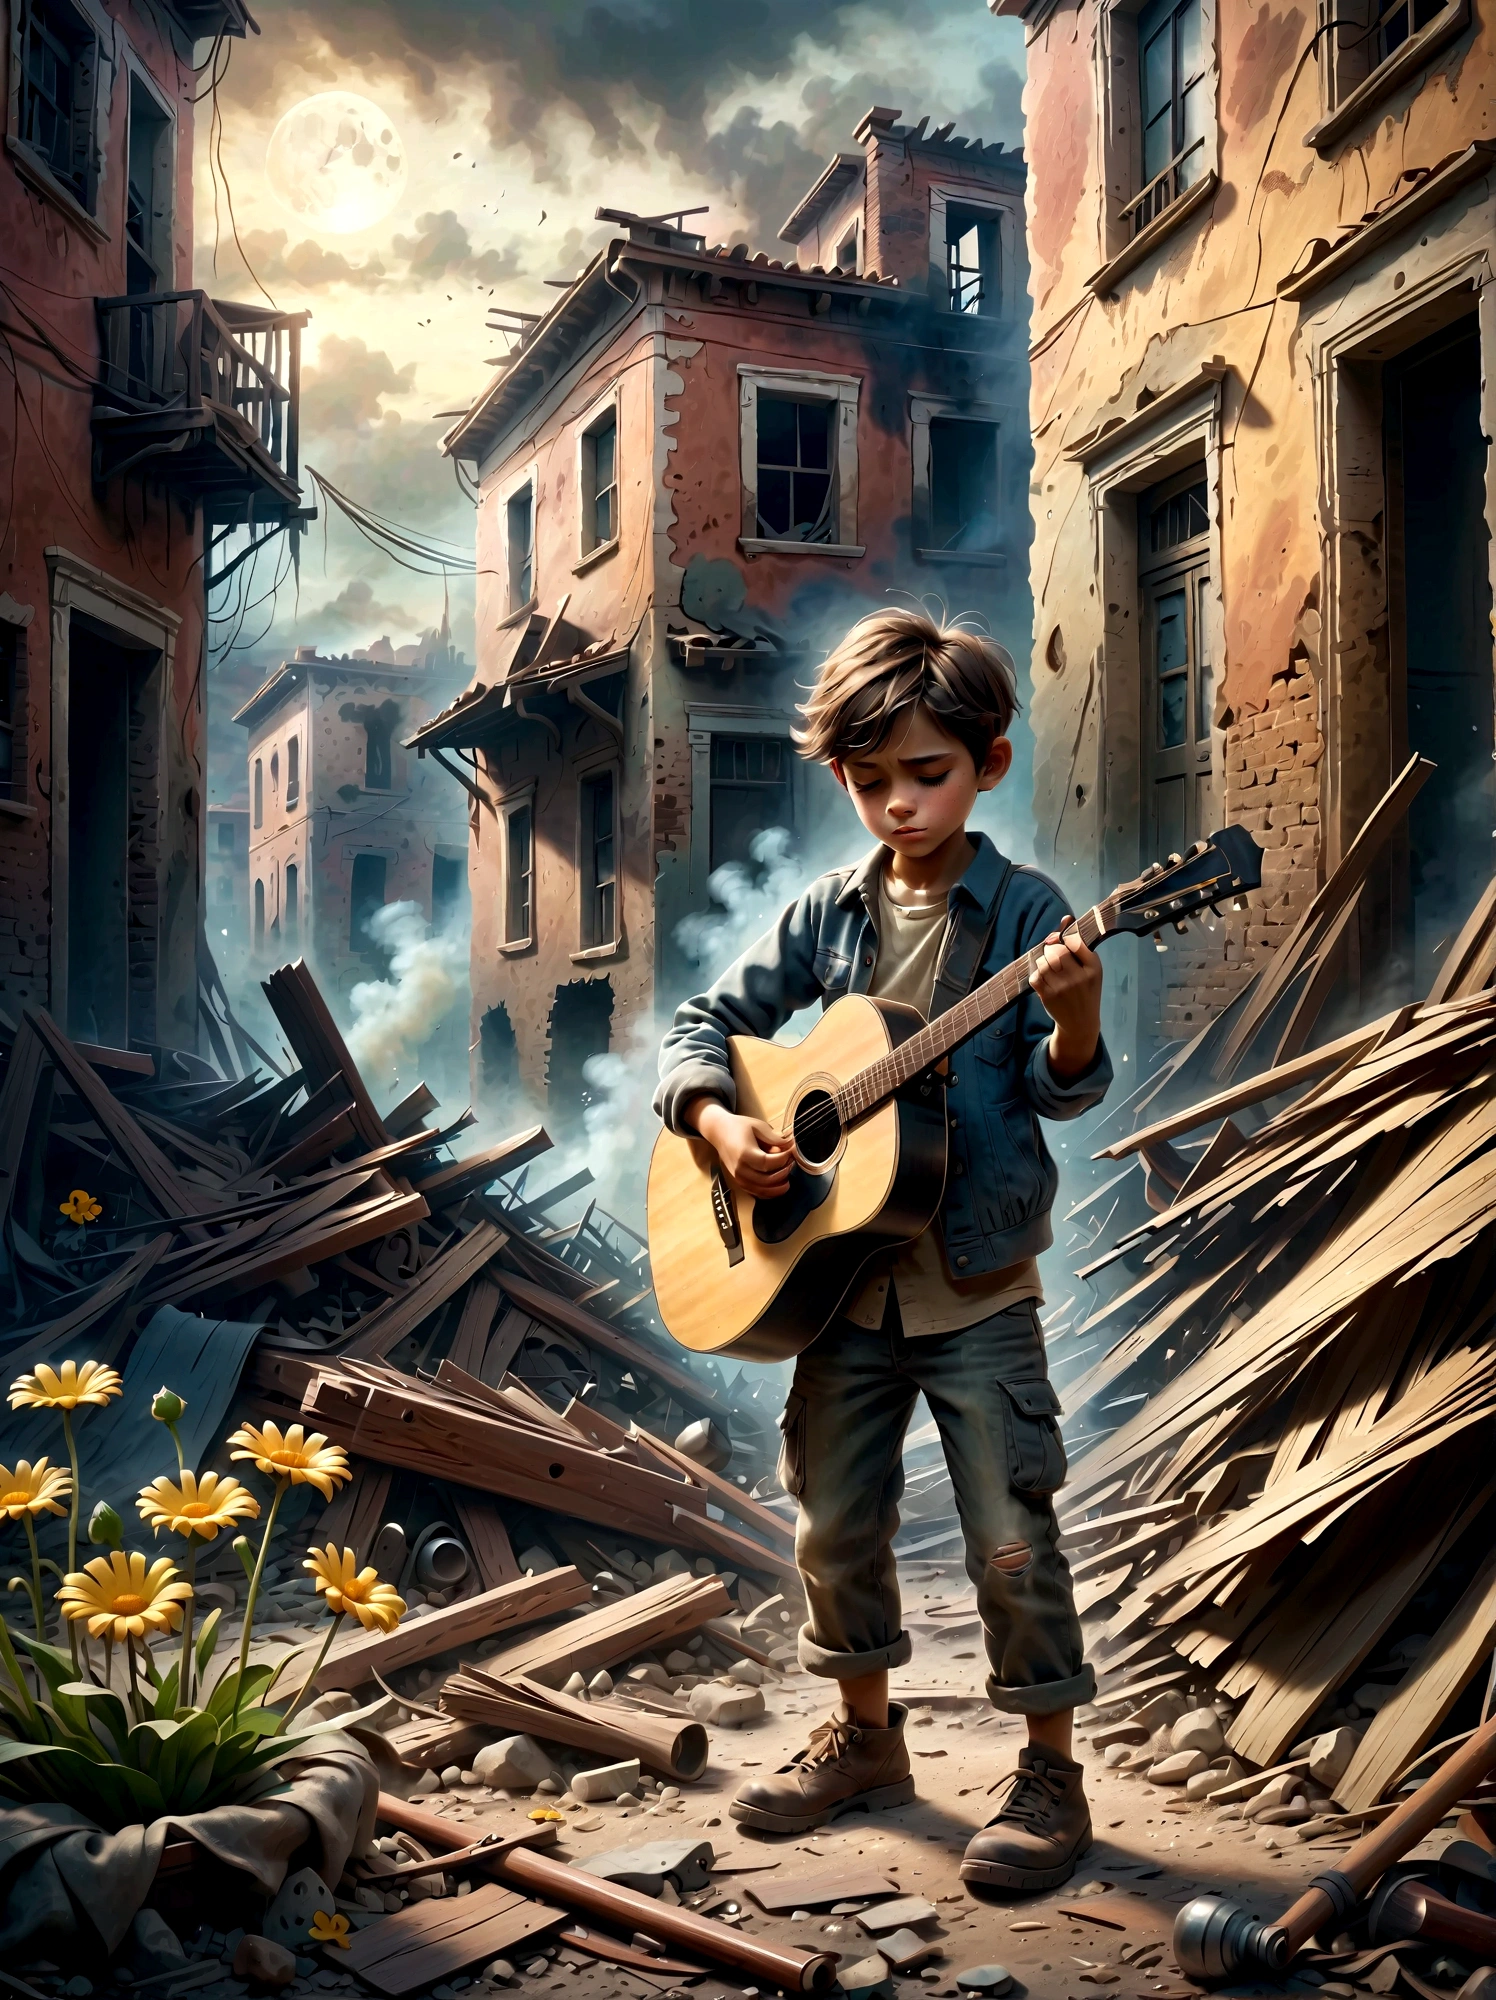 在战乱之中, 烟雾弥漫的废墟, 一个孩子正在弹吉他, (孩子身上长出一朵顽强的小花&#39;的脚), 这一场景捕捉到了周围环境的破坏与人们的纯真之间的鲜明对比。 . 废墟里满是瓦砾和建筑残骸, 背景是烟雾和火焰. 孩子的表情很阴沉, 反映了严峻的现实. 整体氛围凄美而感人, 用柔和的色彩和戏剧性的灯光来强调音乐所代表的荒凉和希望的曙光.